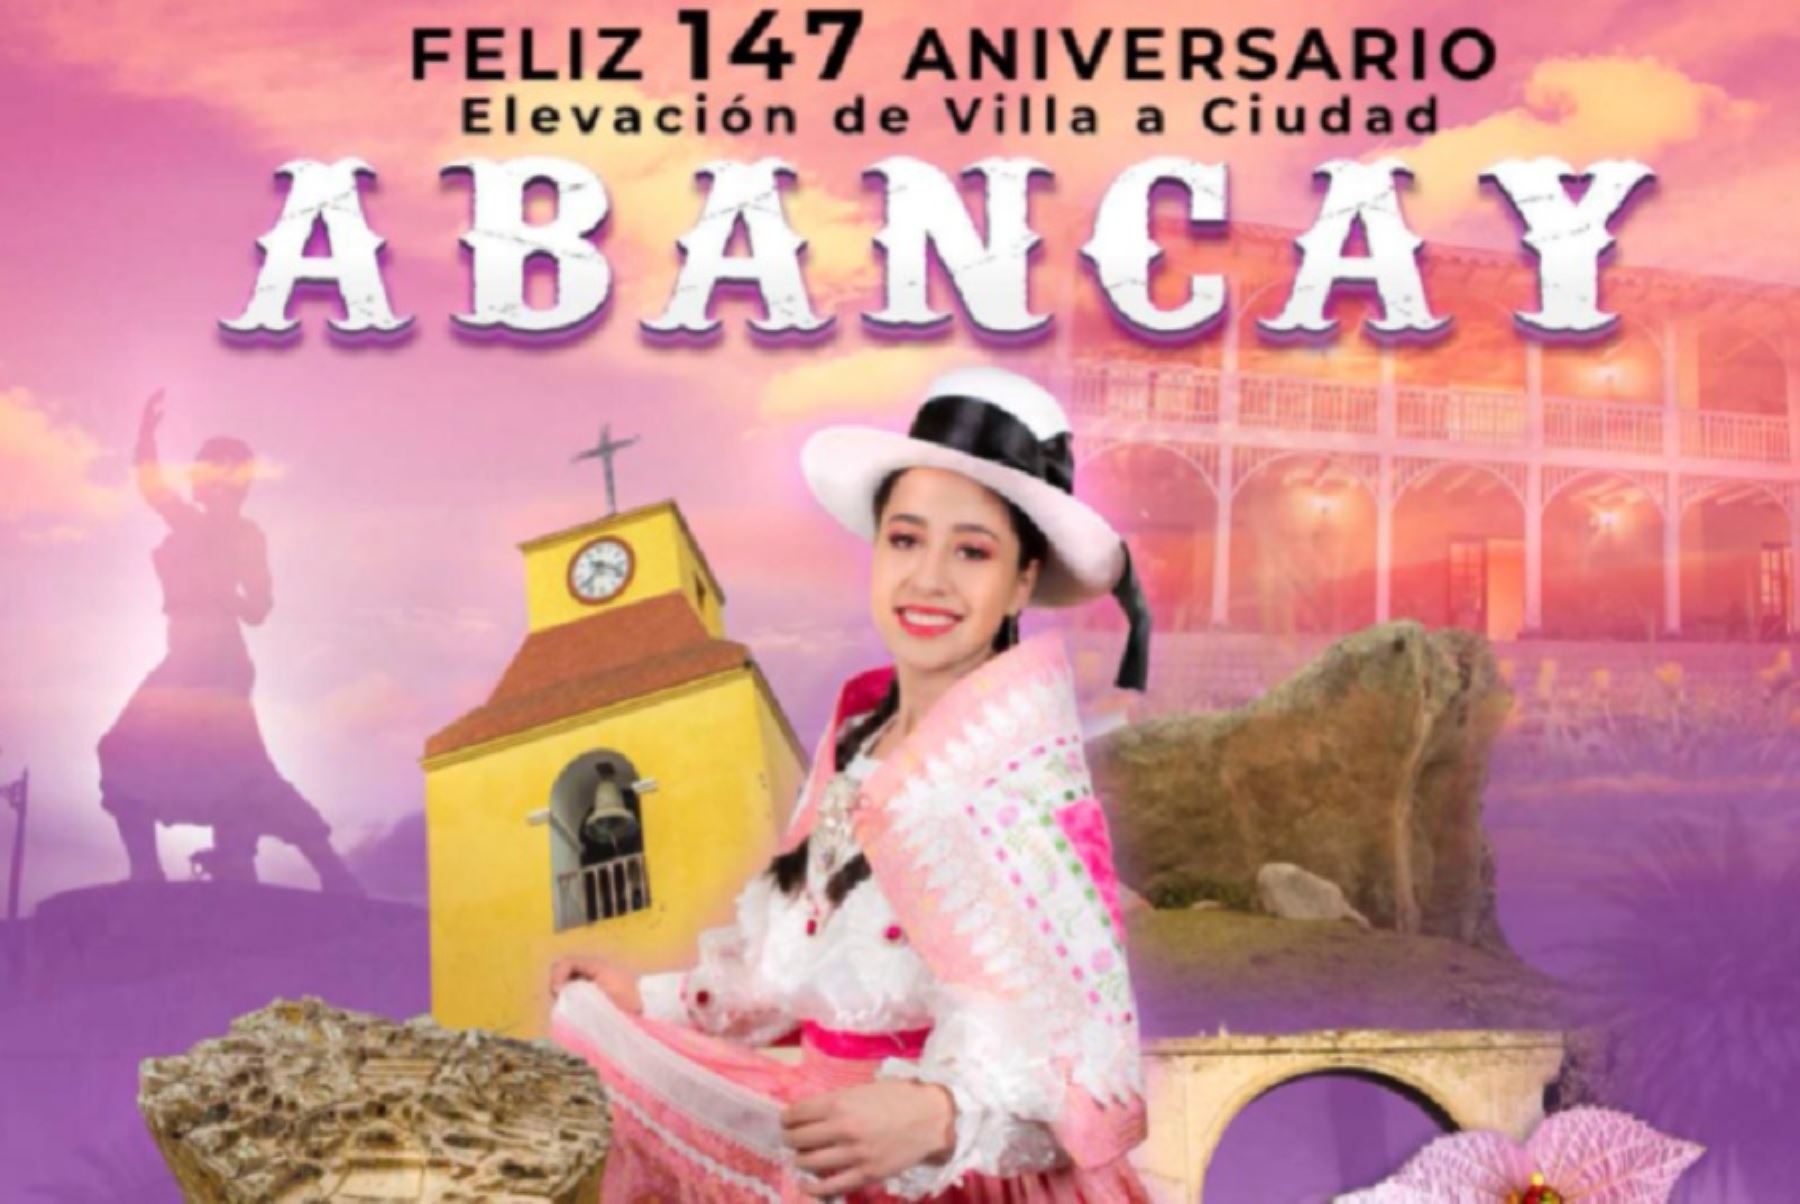 Joya de Apurímac: fascínate con los atractivos turísticos de Abancay en su 147 aniversario